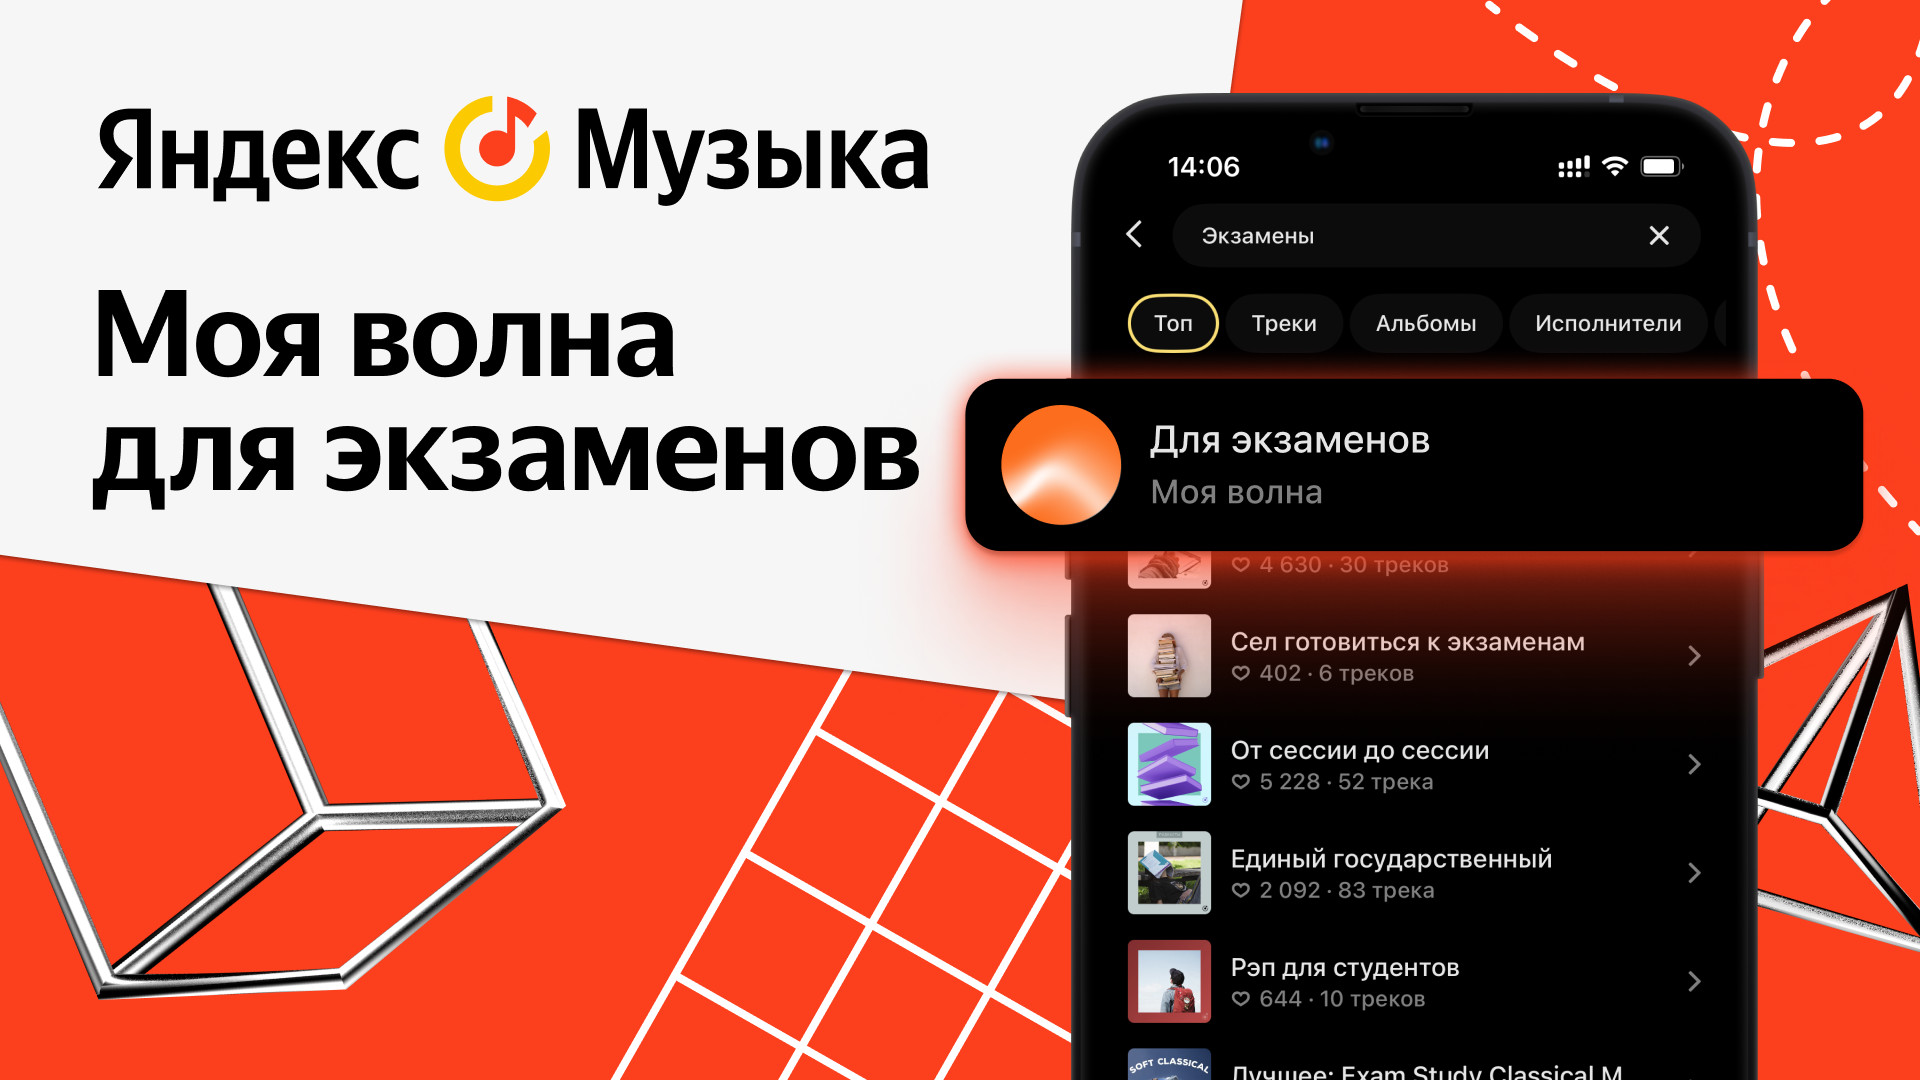 Яндекс Музыка рассказала, какую музыку нужно слушать для успешной сдачи экзаменов